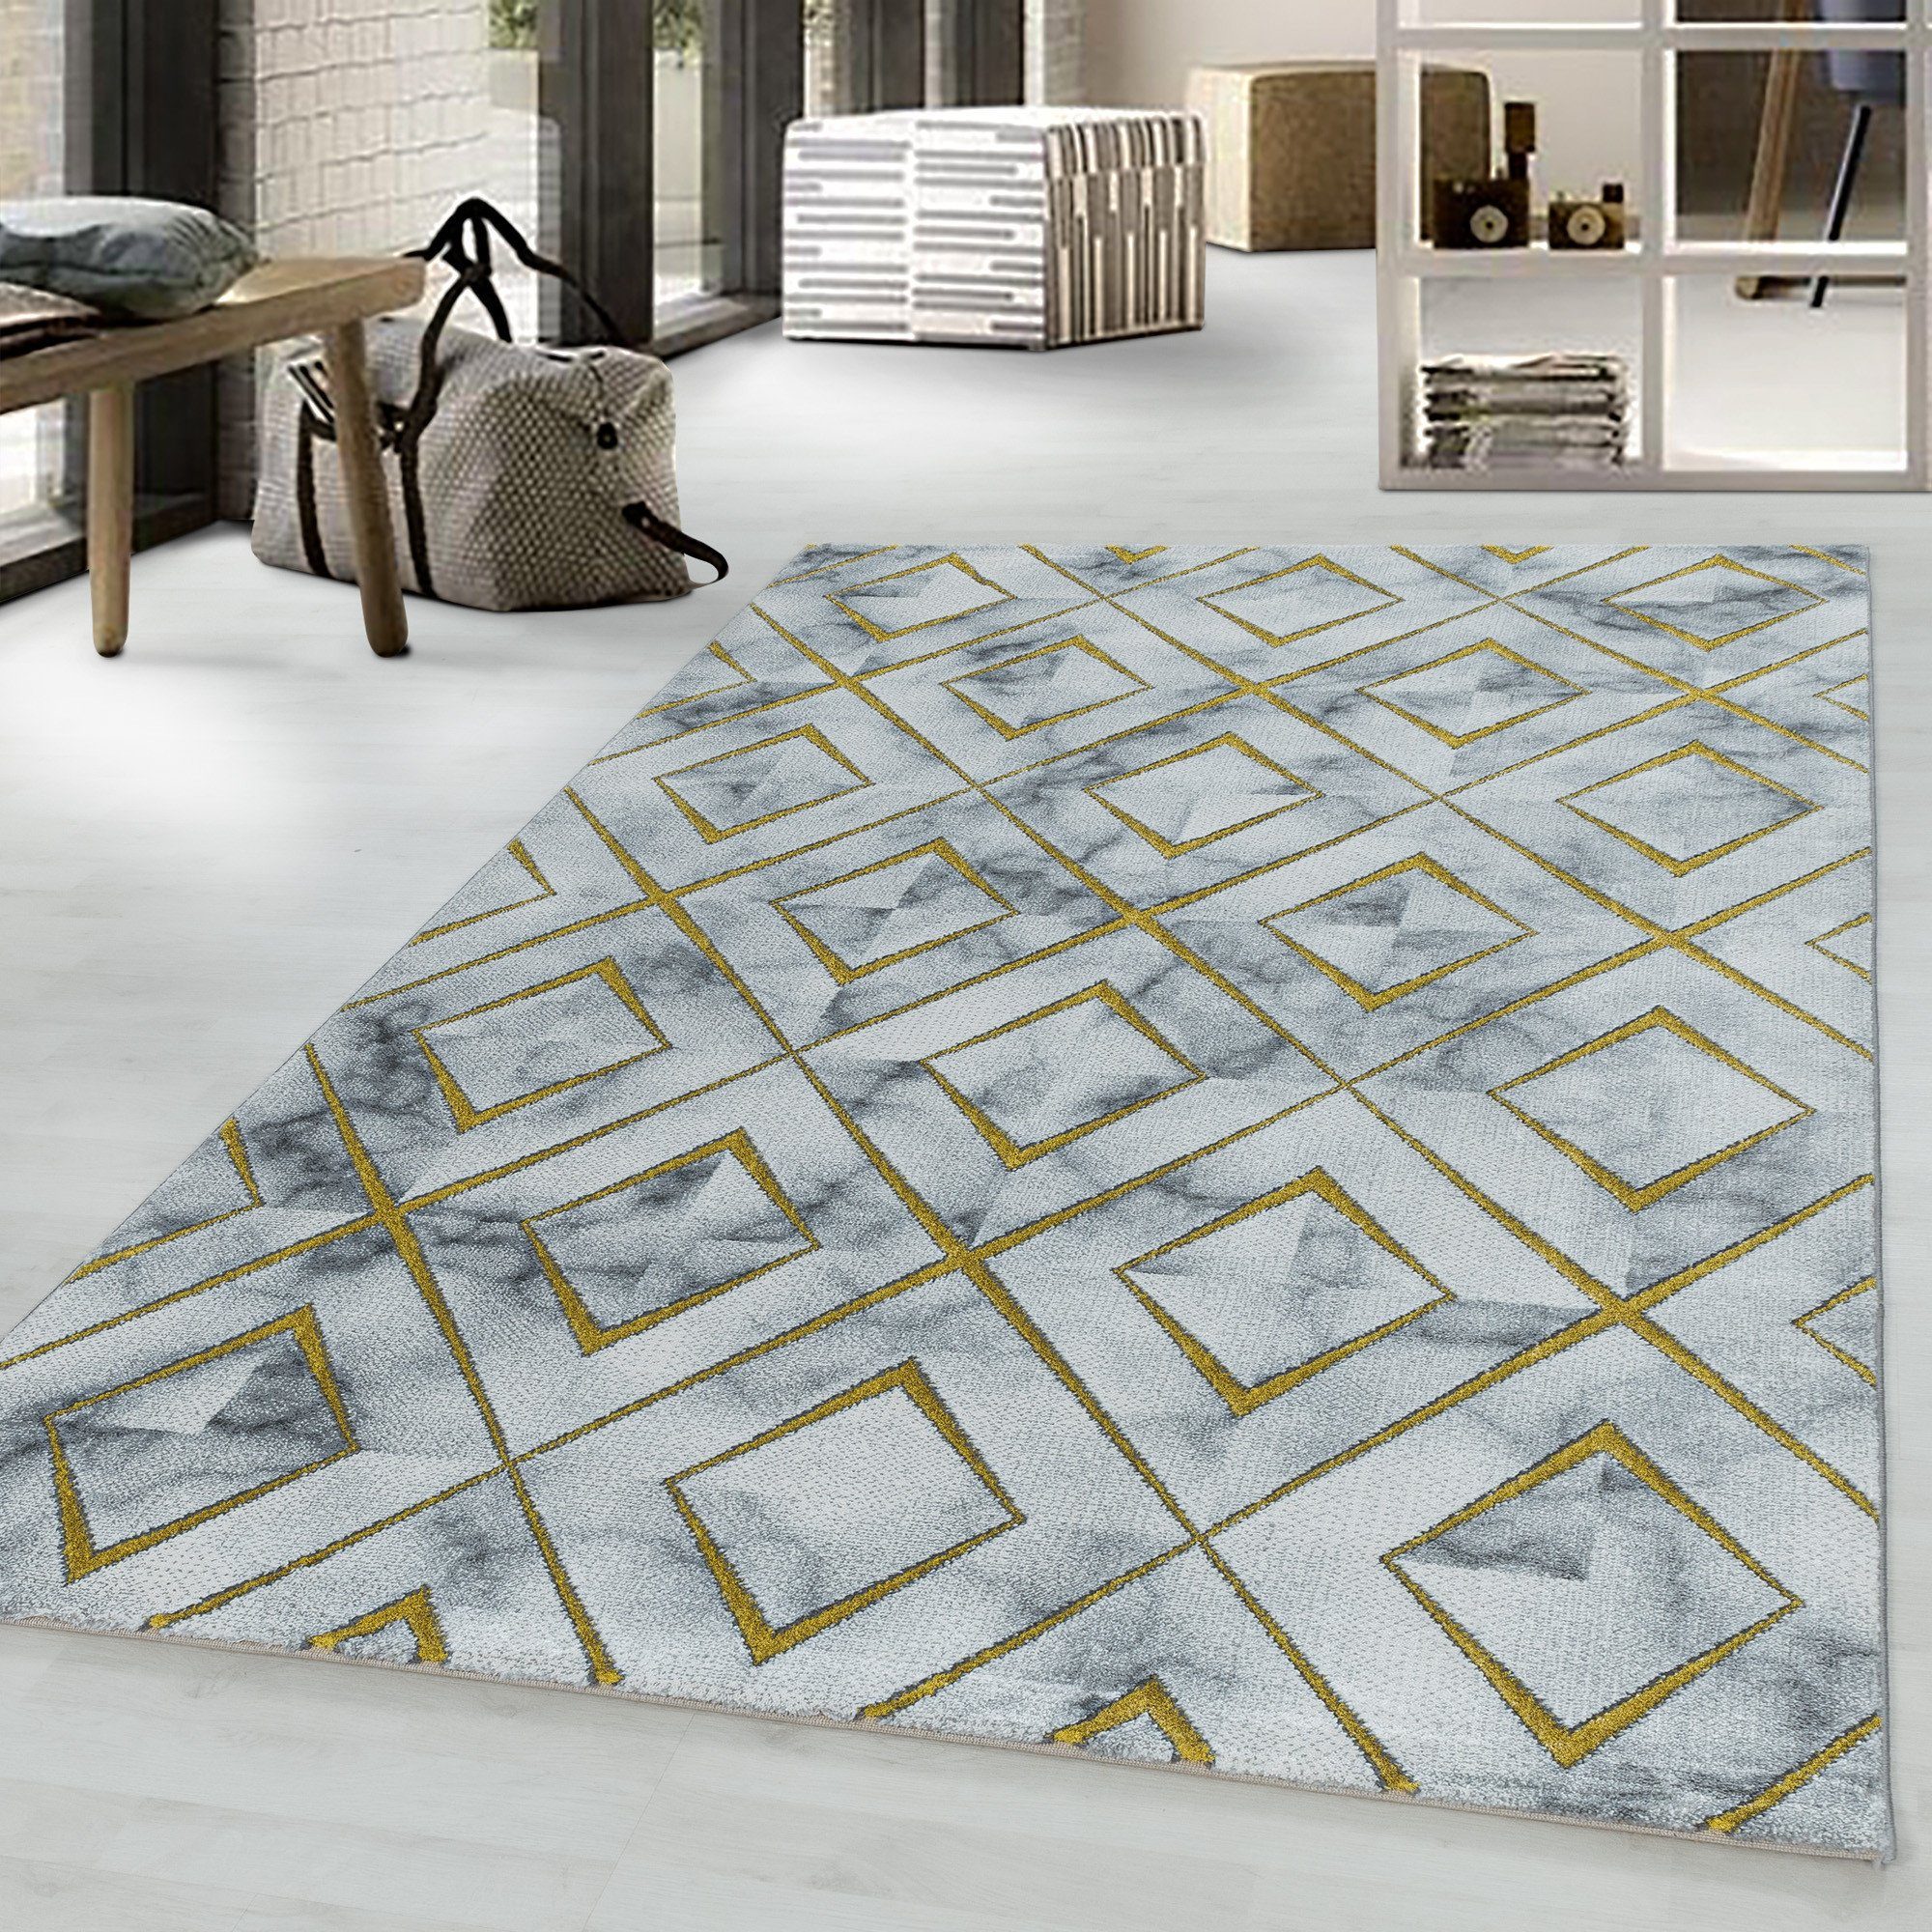 Designteppich Marmoroptik Flachflorteppich Kurzflorteppich Wohnzimmer Muster, Miovani Gold | Kinderteppiche